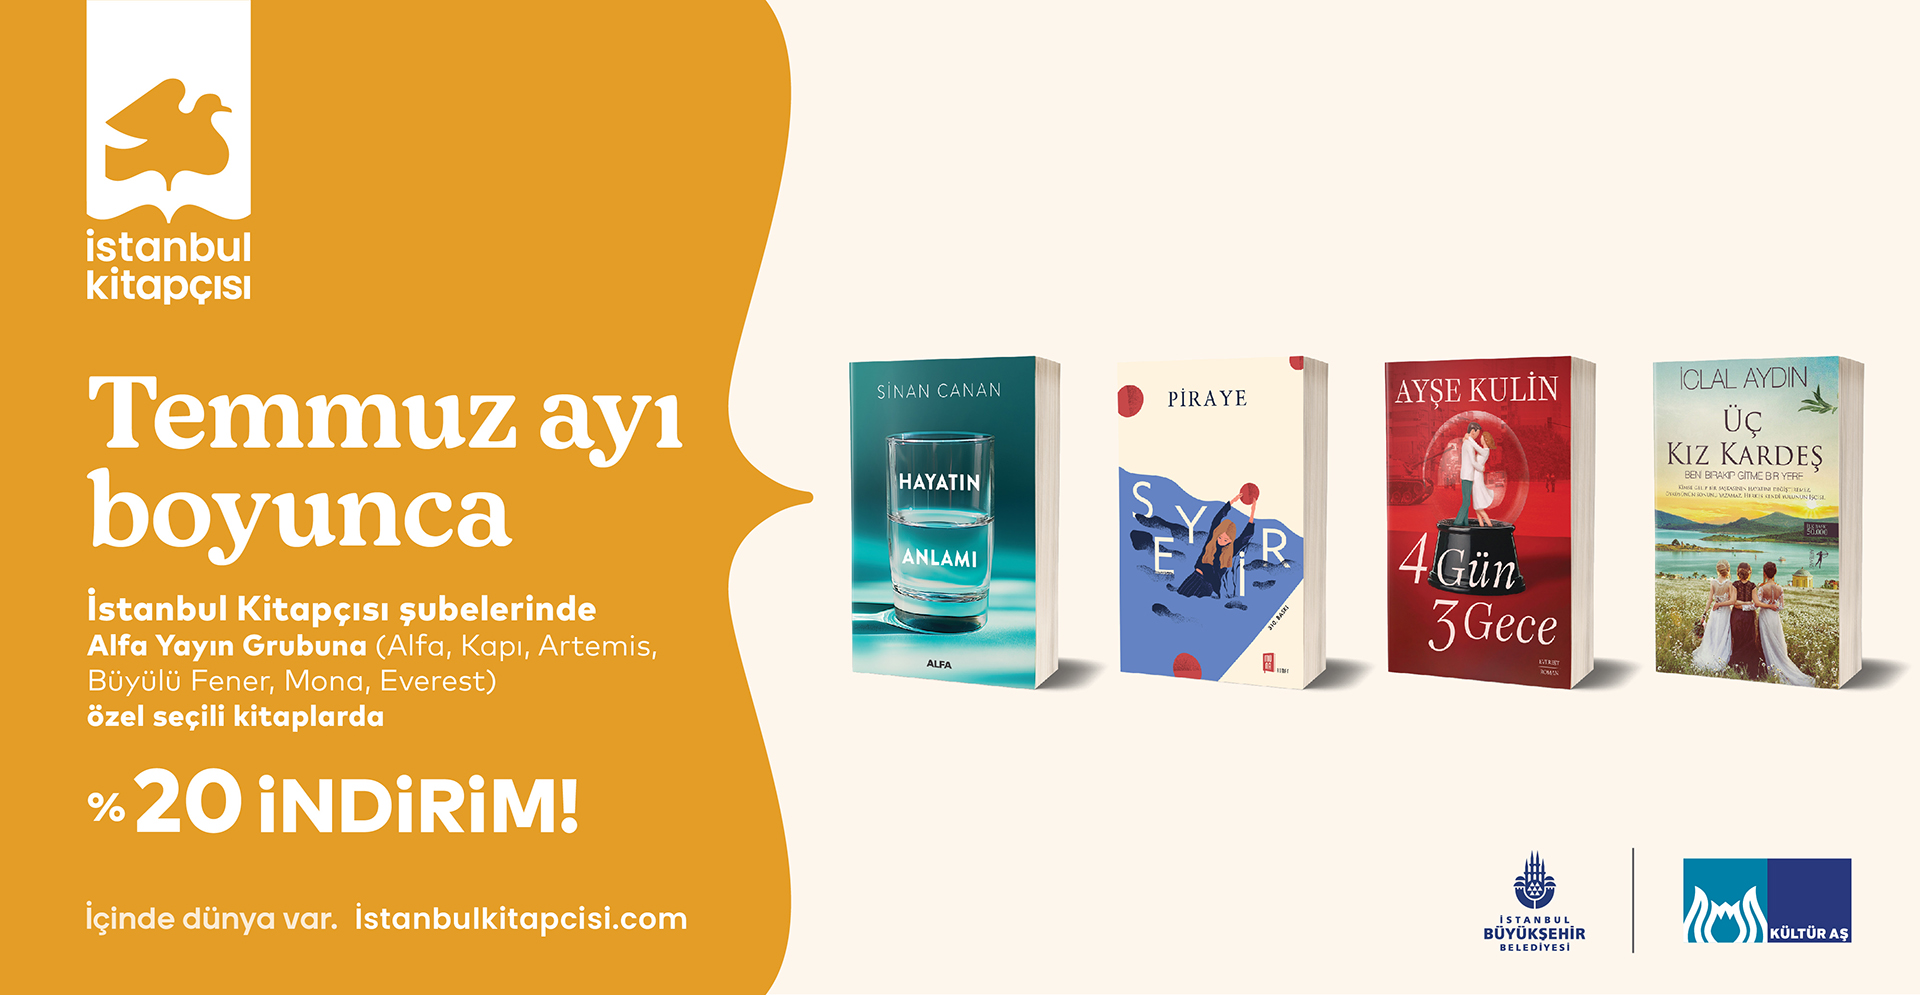 İstanbul Kitapçısı’ndan temmuz ayına özel kampanya!